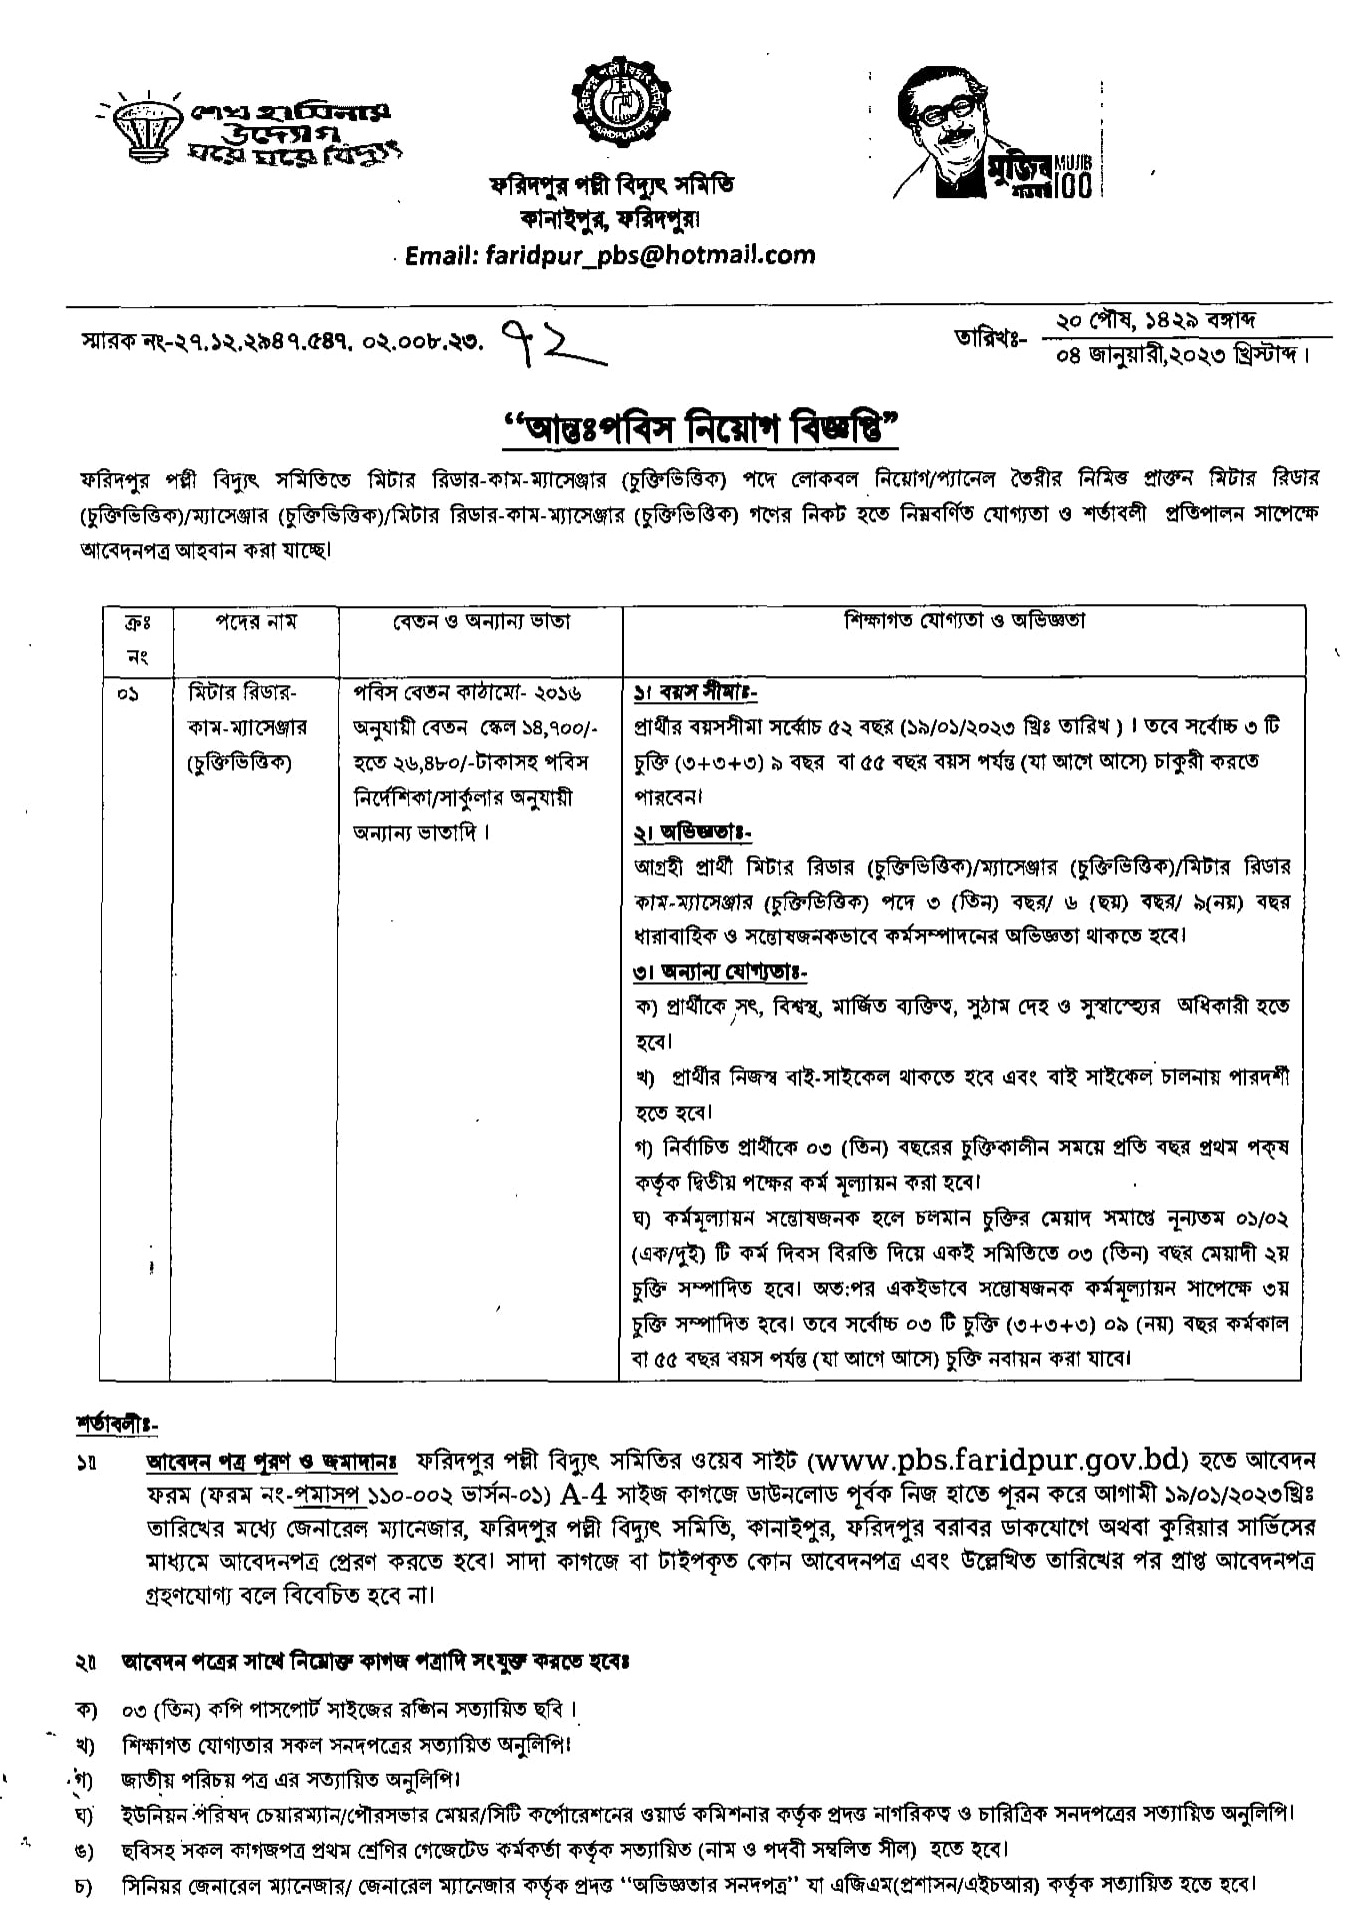 পল্লী বিদ্যুৎ সমিতি নিয়োগ ২০২৩ সার্কুলার - Palli Bidyut Samity Job Circular 2023 - sorkari chakrir khobor 2023